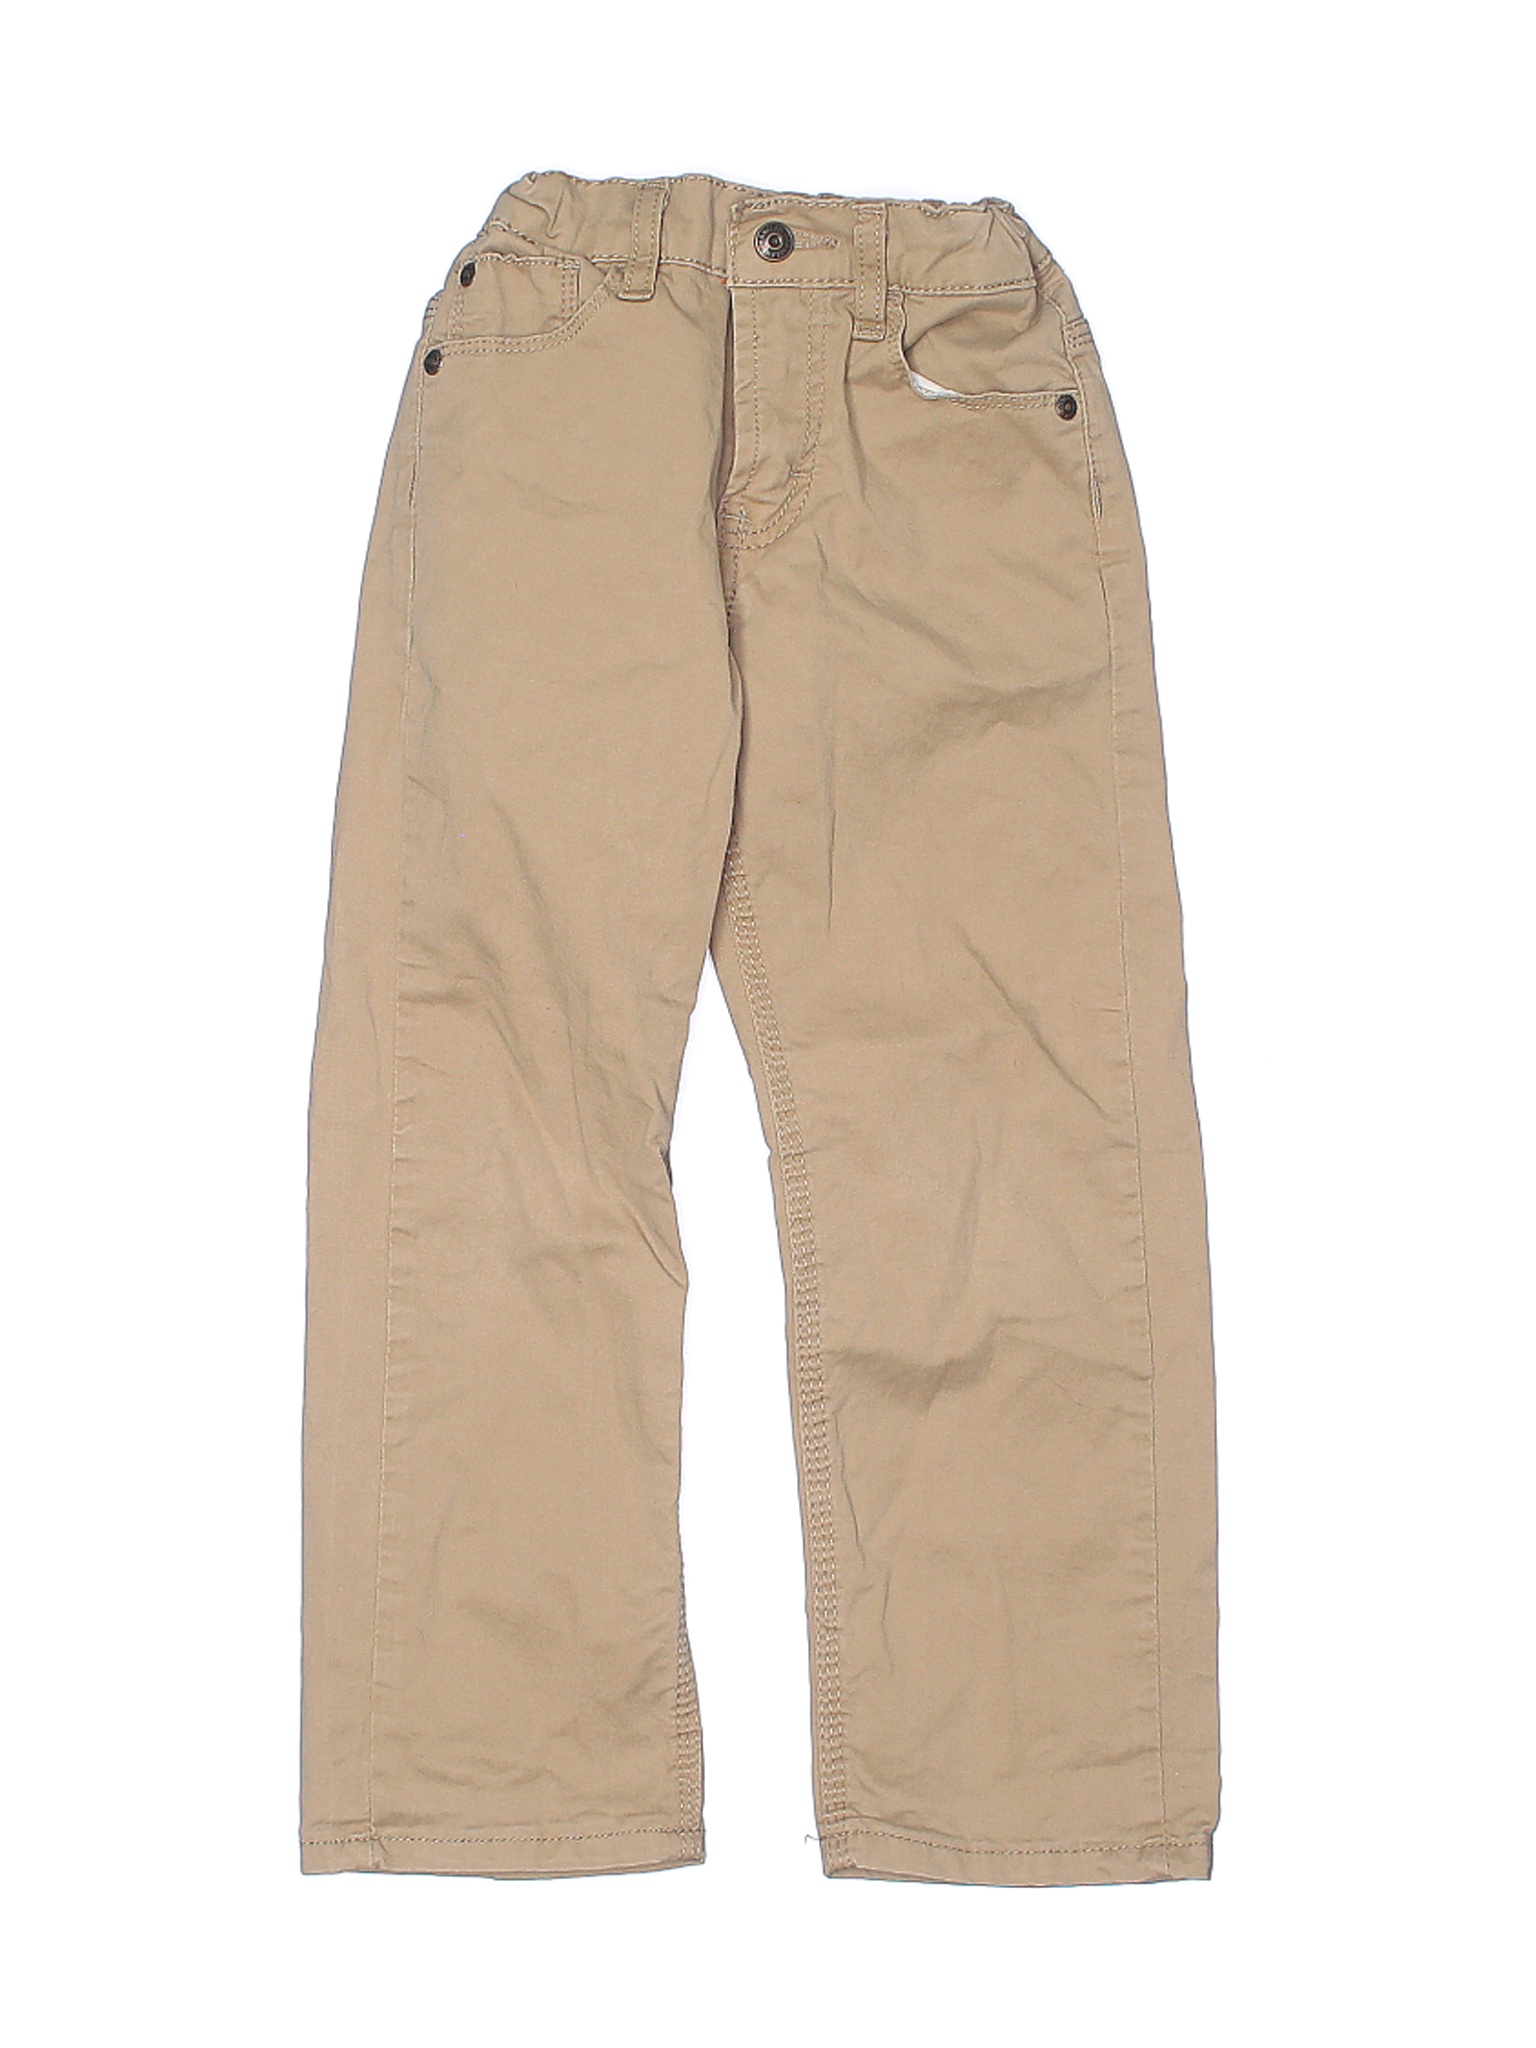 VF Jeanswear Boys Brown Khakis 5 | eBay